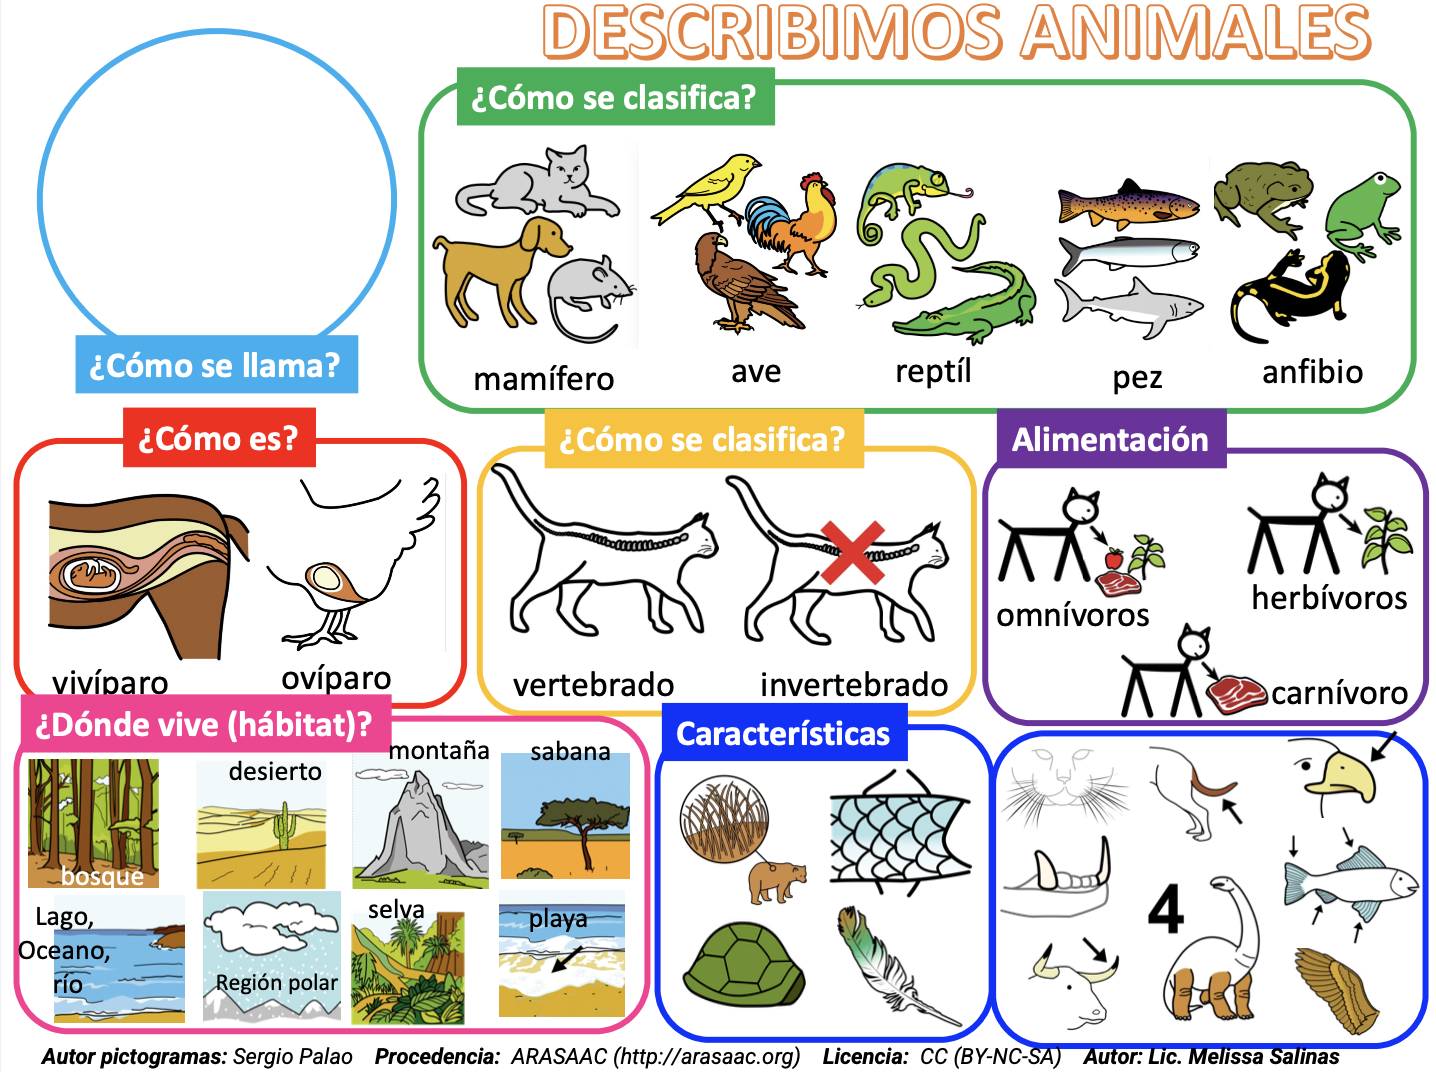 Descripción de animales